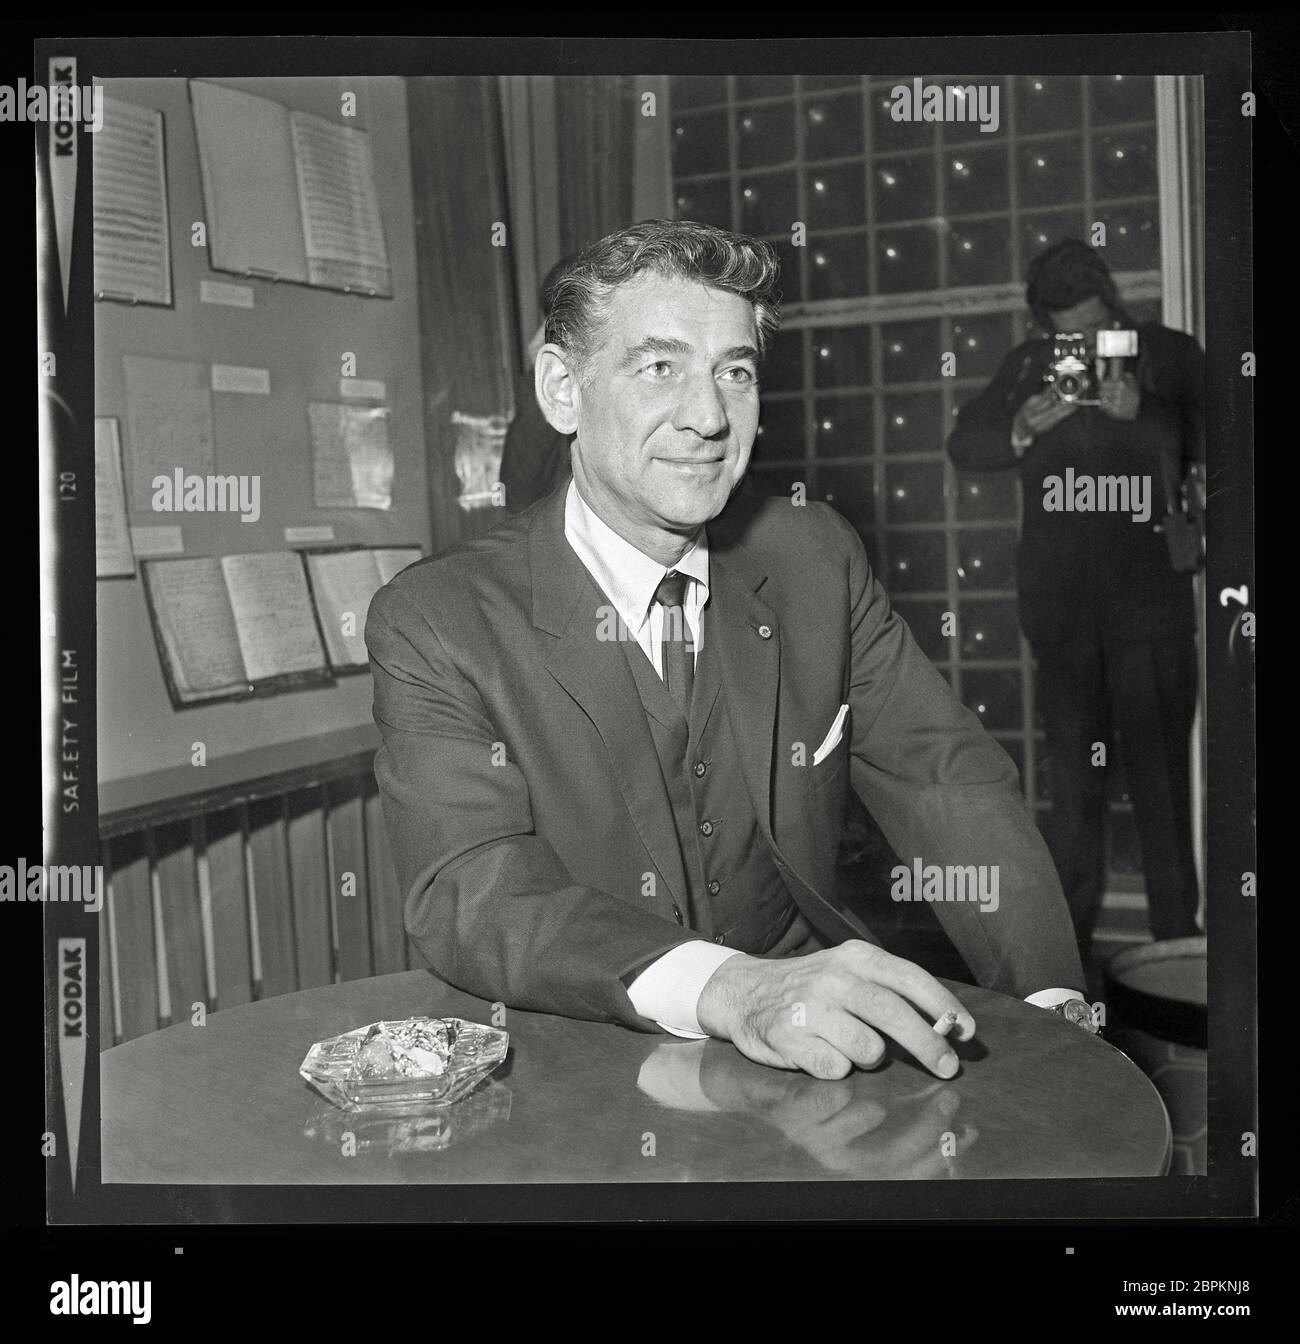 Der amerikanische Dirigent und Komponist Leonard Bernstein in London, um an mehreren Konzerten teilzunehmen. Hinter der Bühne in der Royal Festival Hall. 11. Februar 1963. Bild von 2.25 x 2.25 Zoll negativ. Stockfoto